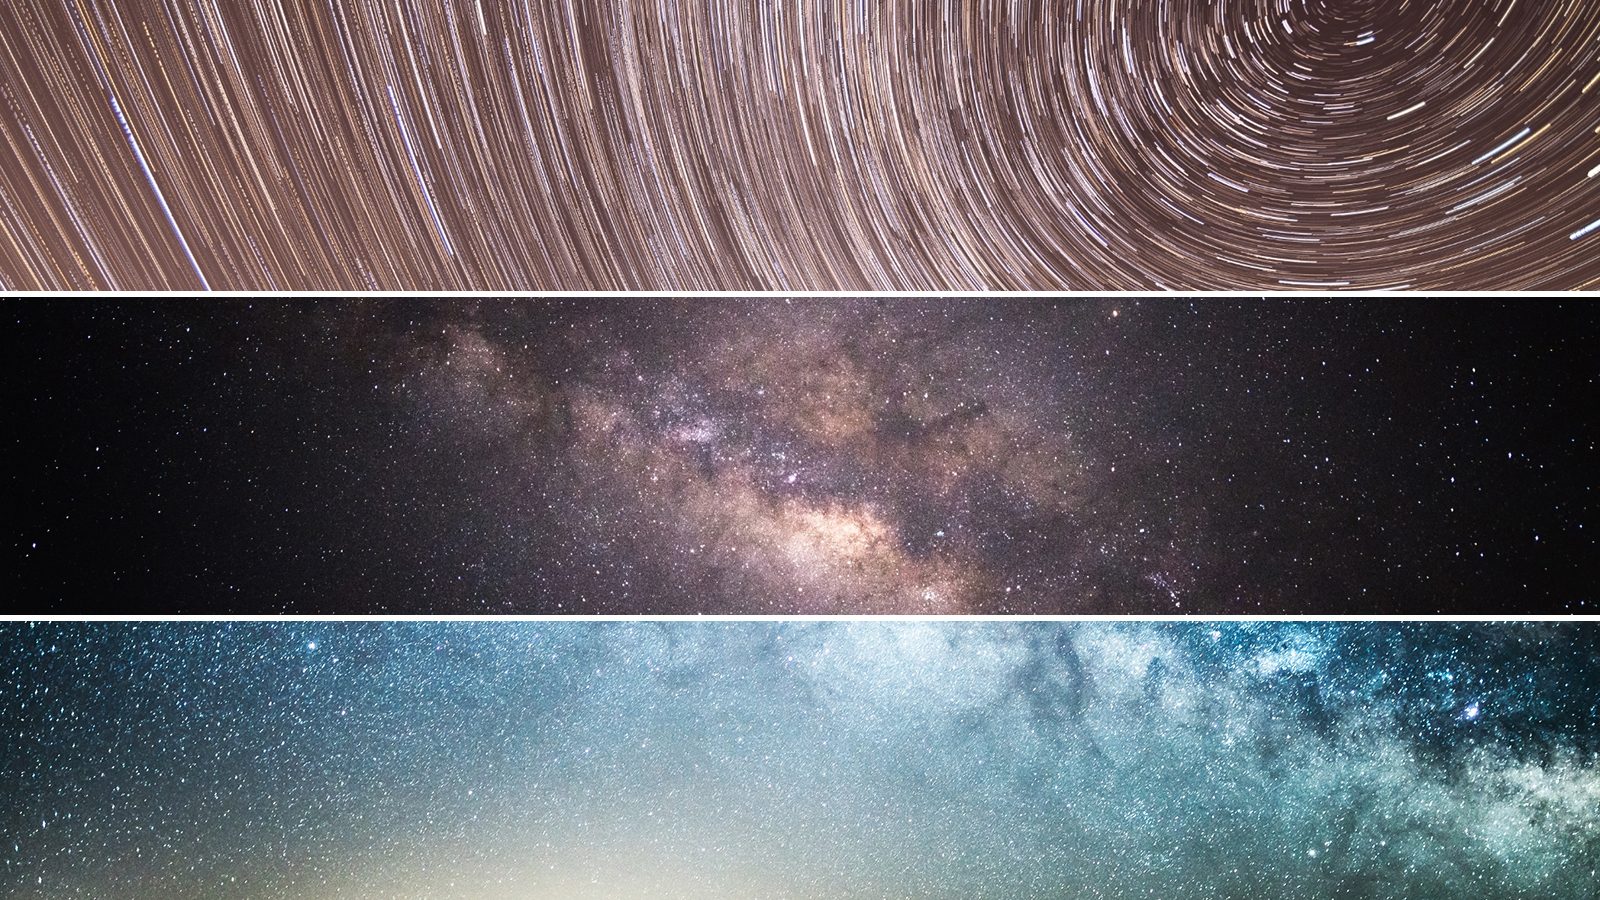 Nextfoto - Csillagok fotózása - Hasznos tippek az éjszakai égbolt megörökítéséhez